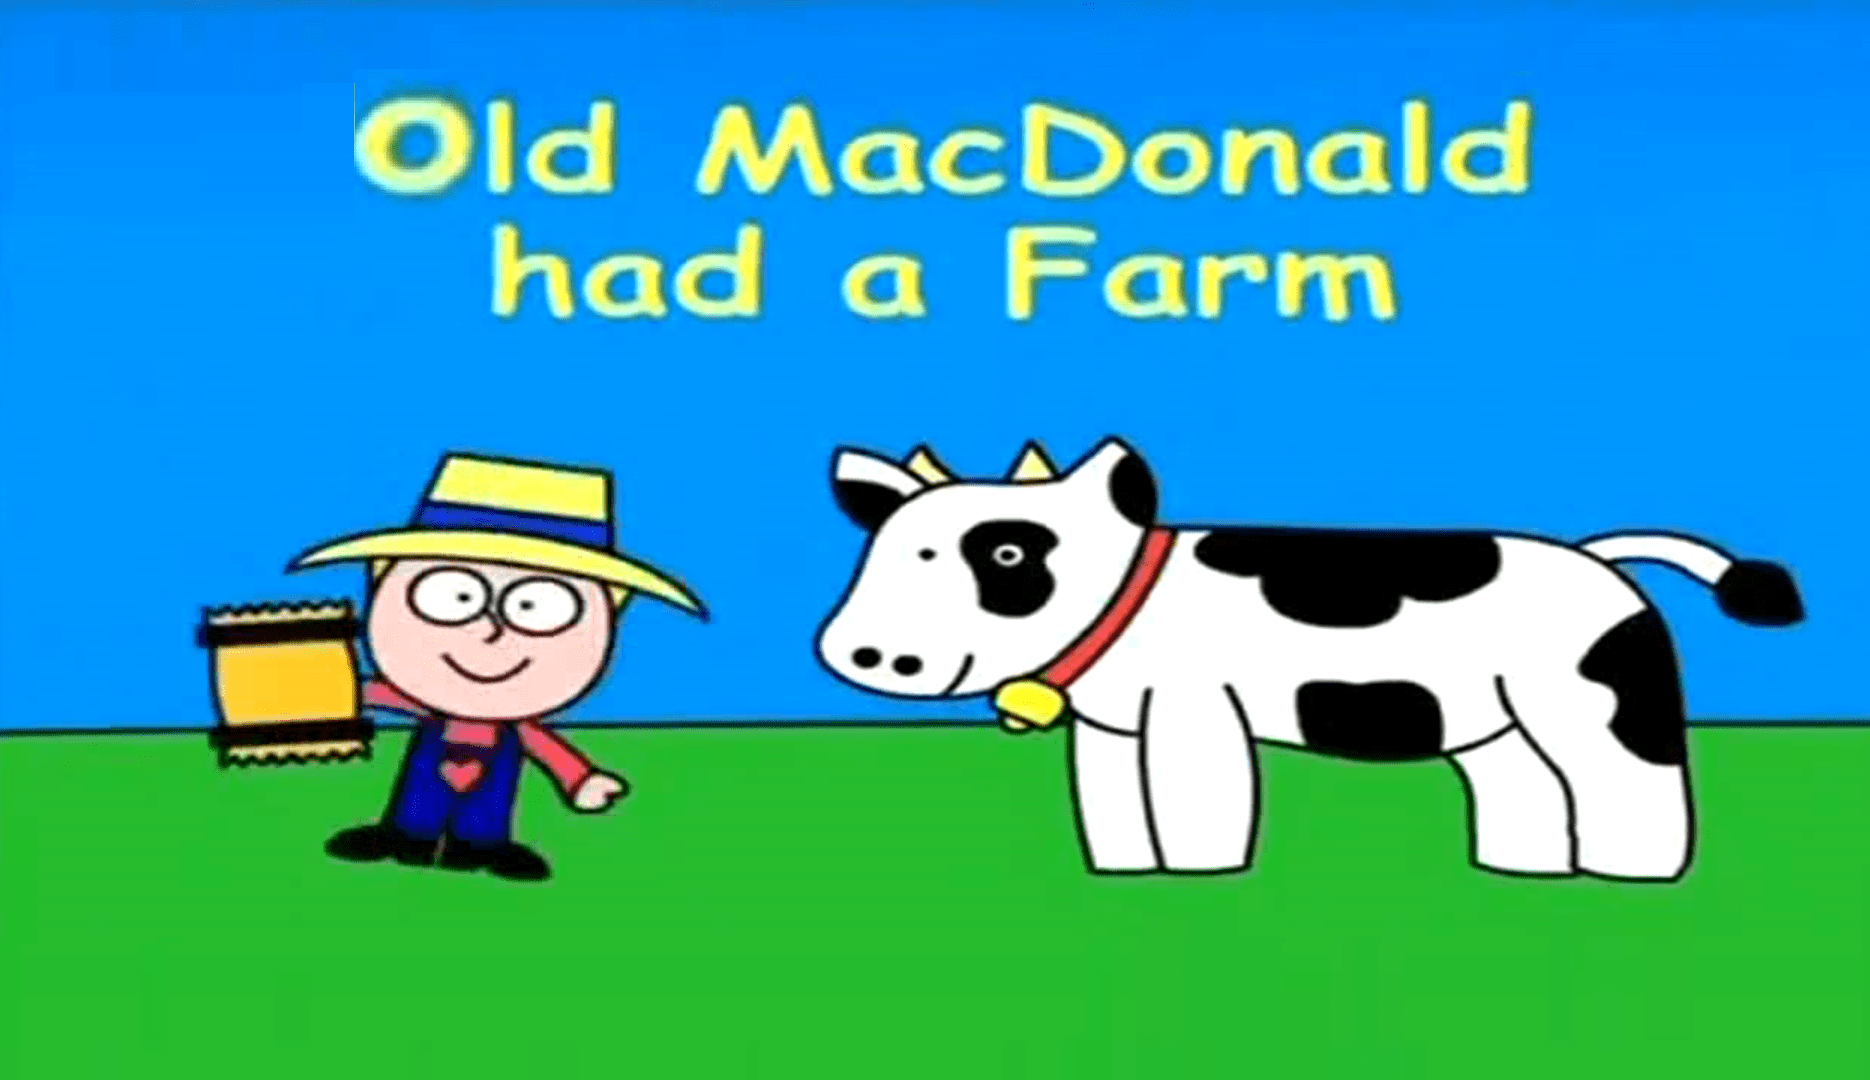 Включи old macdonald. Gracie Lou. JIMJAM Gracie Lou. Пороро old MACDONALD. Old MACDONALD had a Farm раскраска.